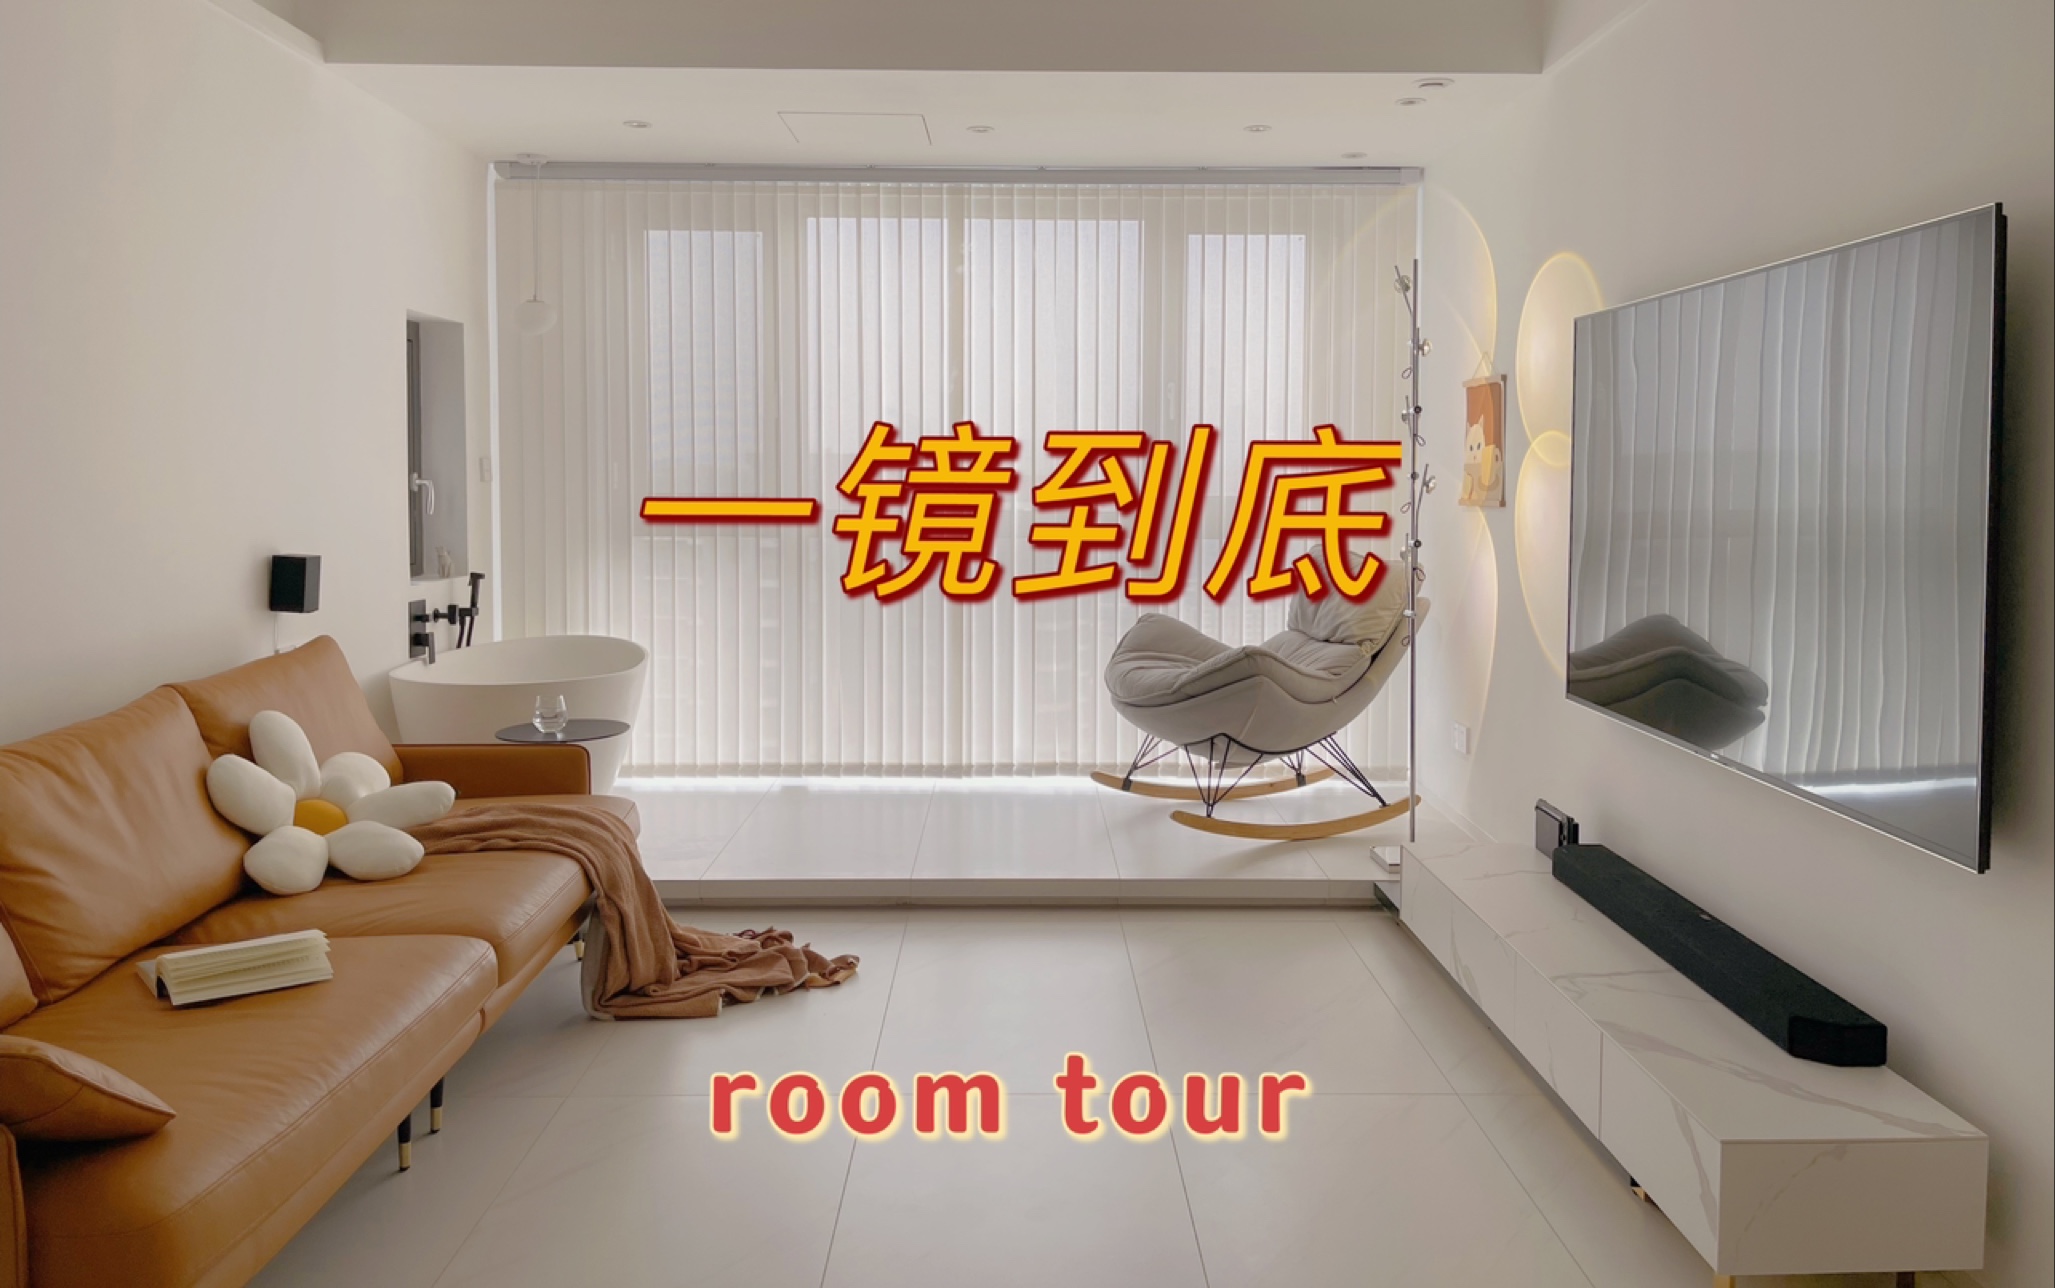 【重制】roomtour 88平两室两厅 快来参观我的新家吧